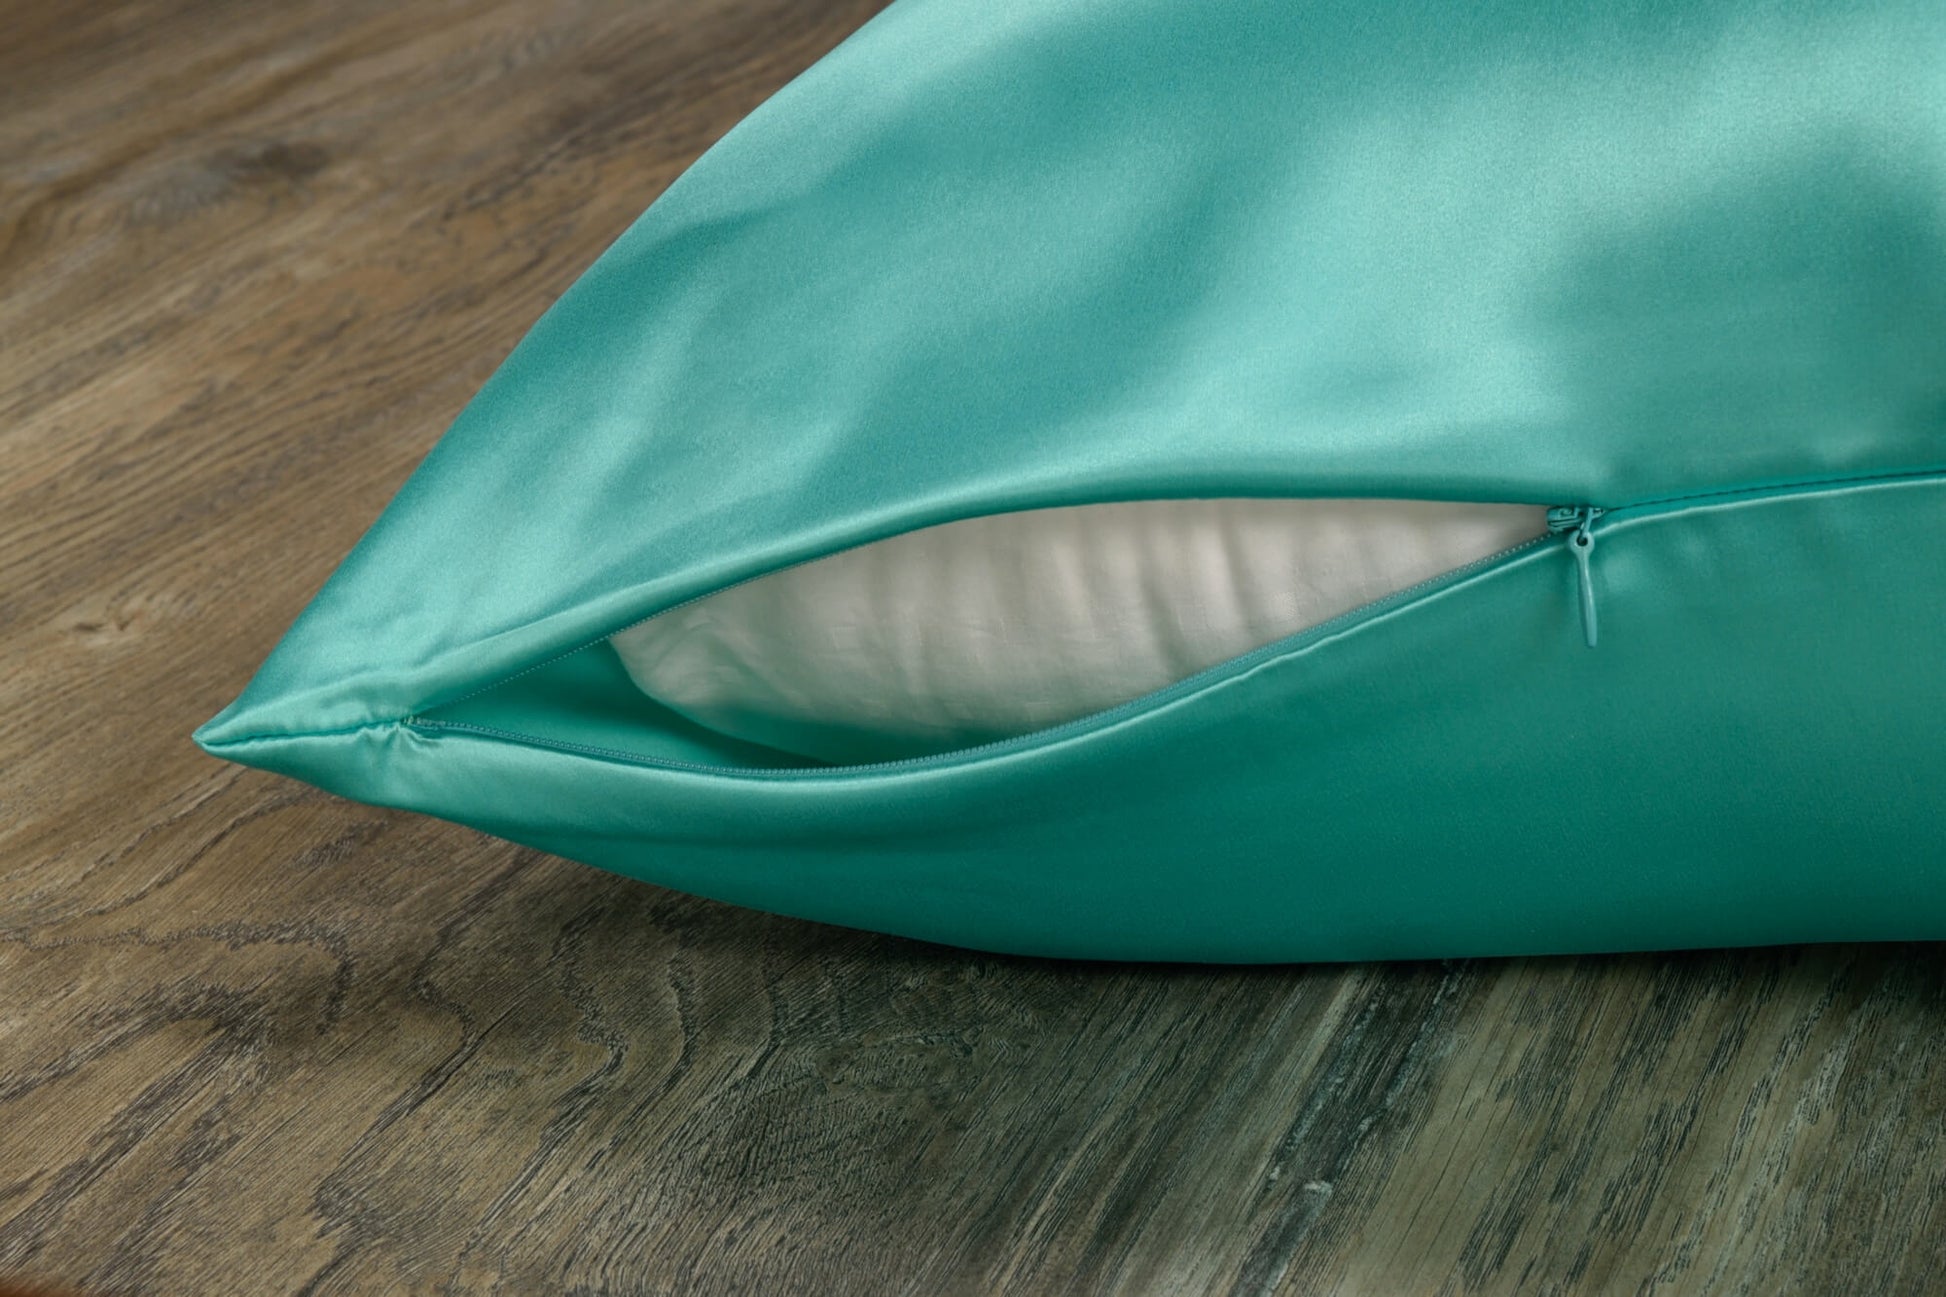 Celestial Silk aqua silk pillowcase with hidden zipper